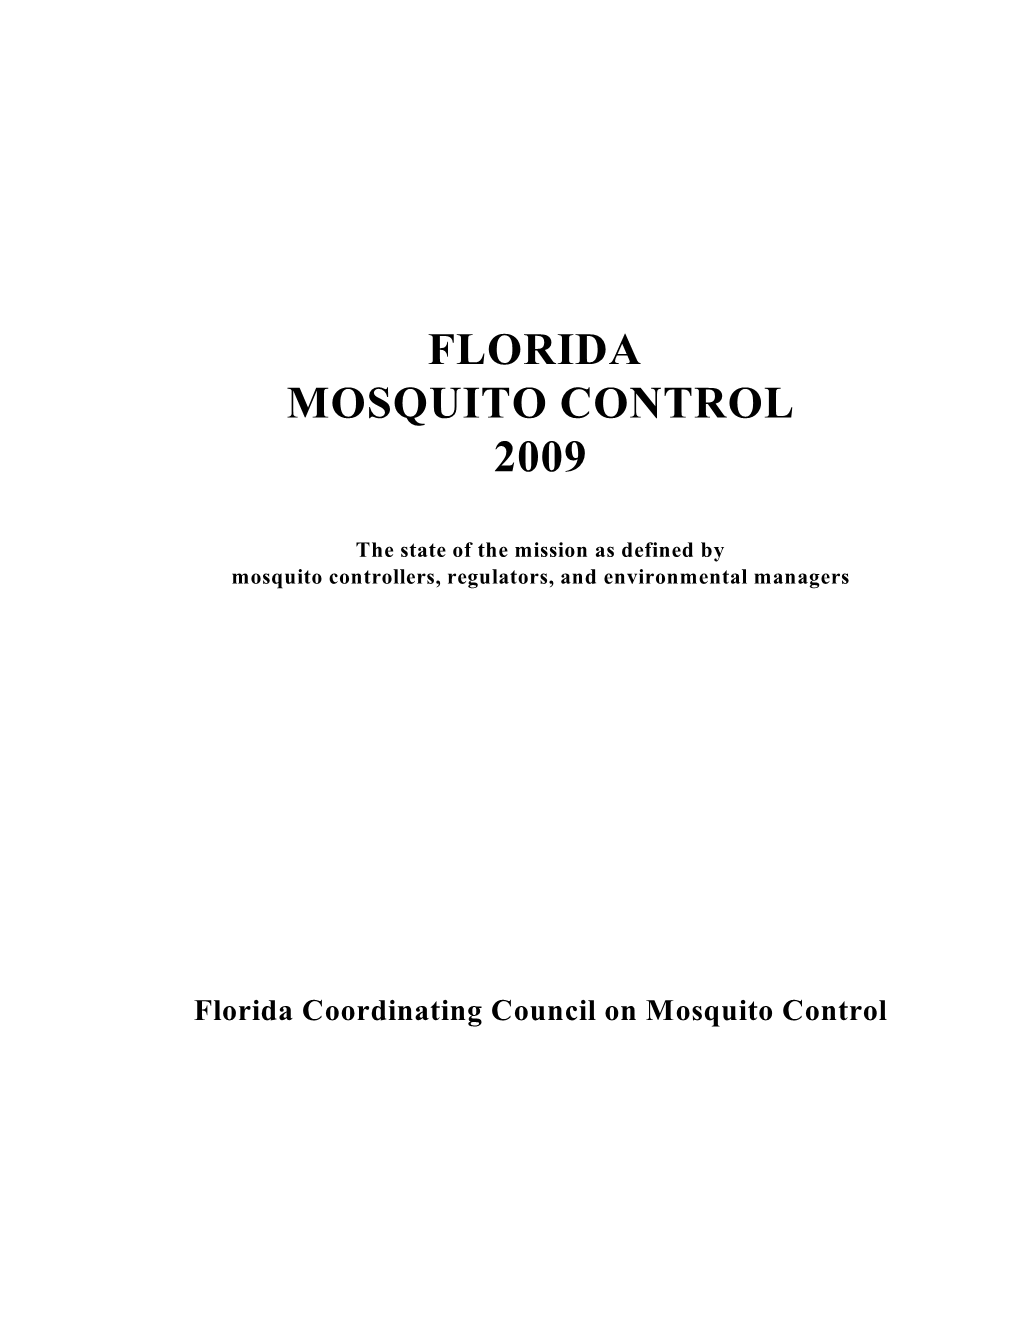 Florida Mosquito Control White Paper 2009